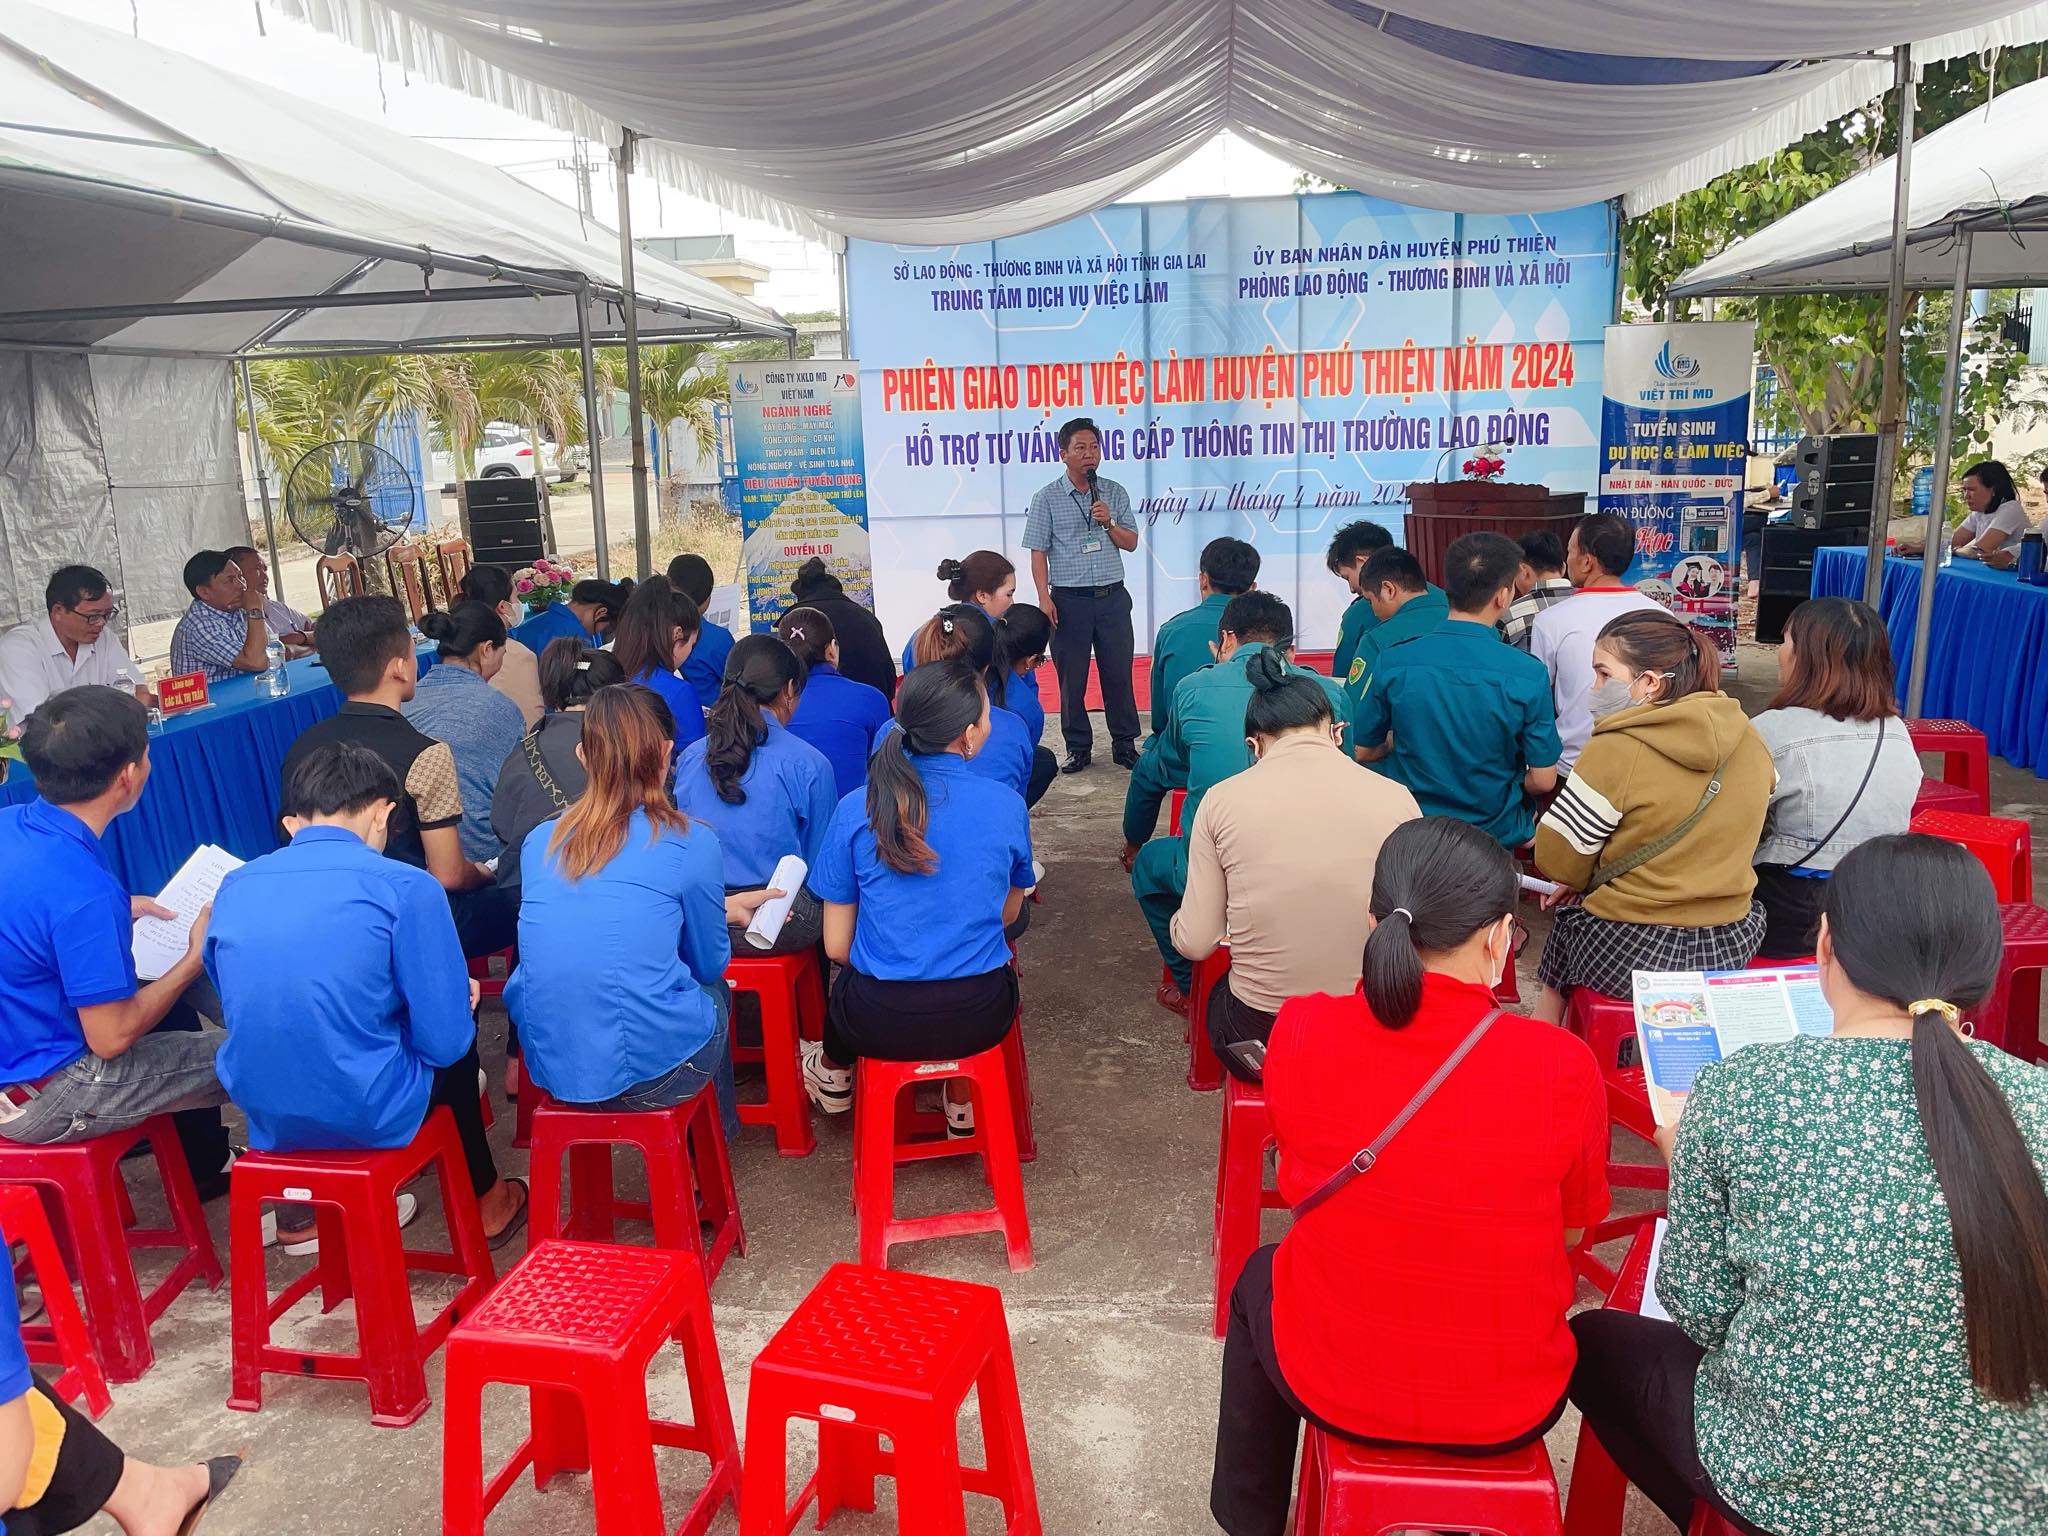 Article Huyện Phú Thiện tổ chức phiên giao dịch việc làm tại xã Ayun Hạ và xã Ia Sol